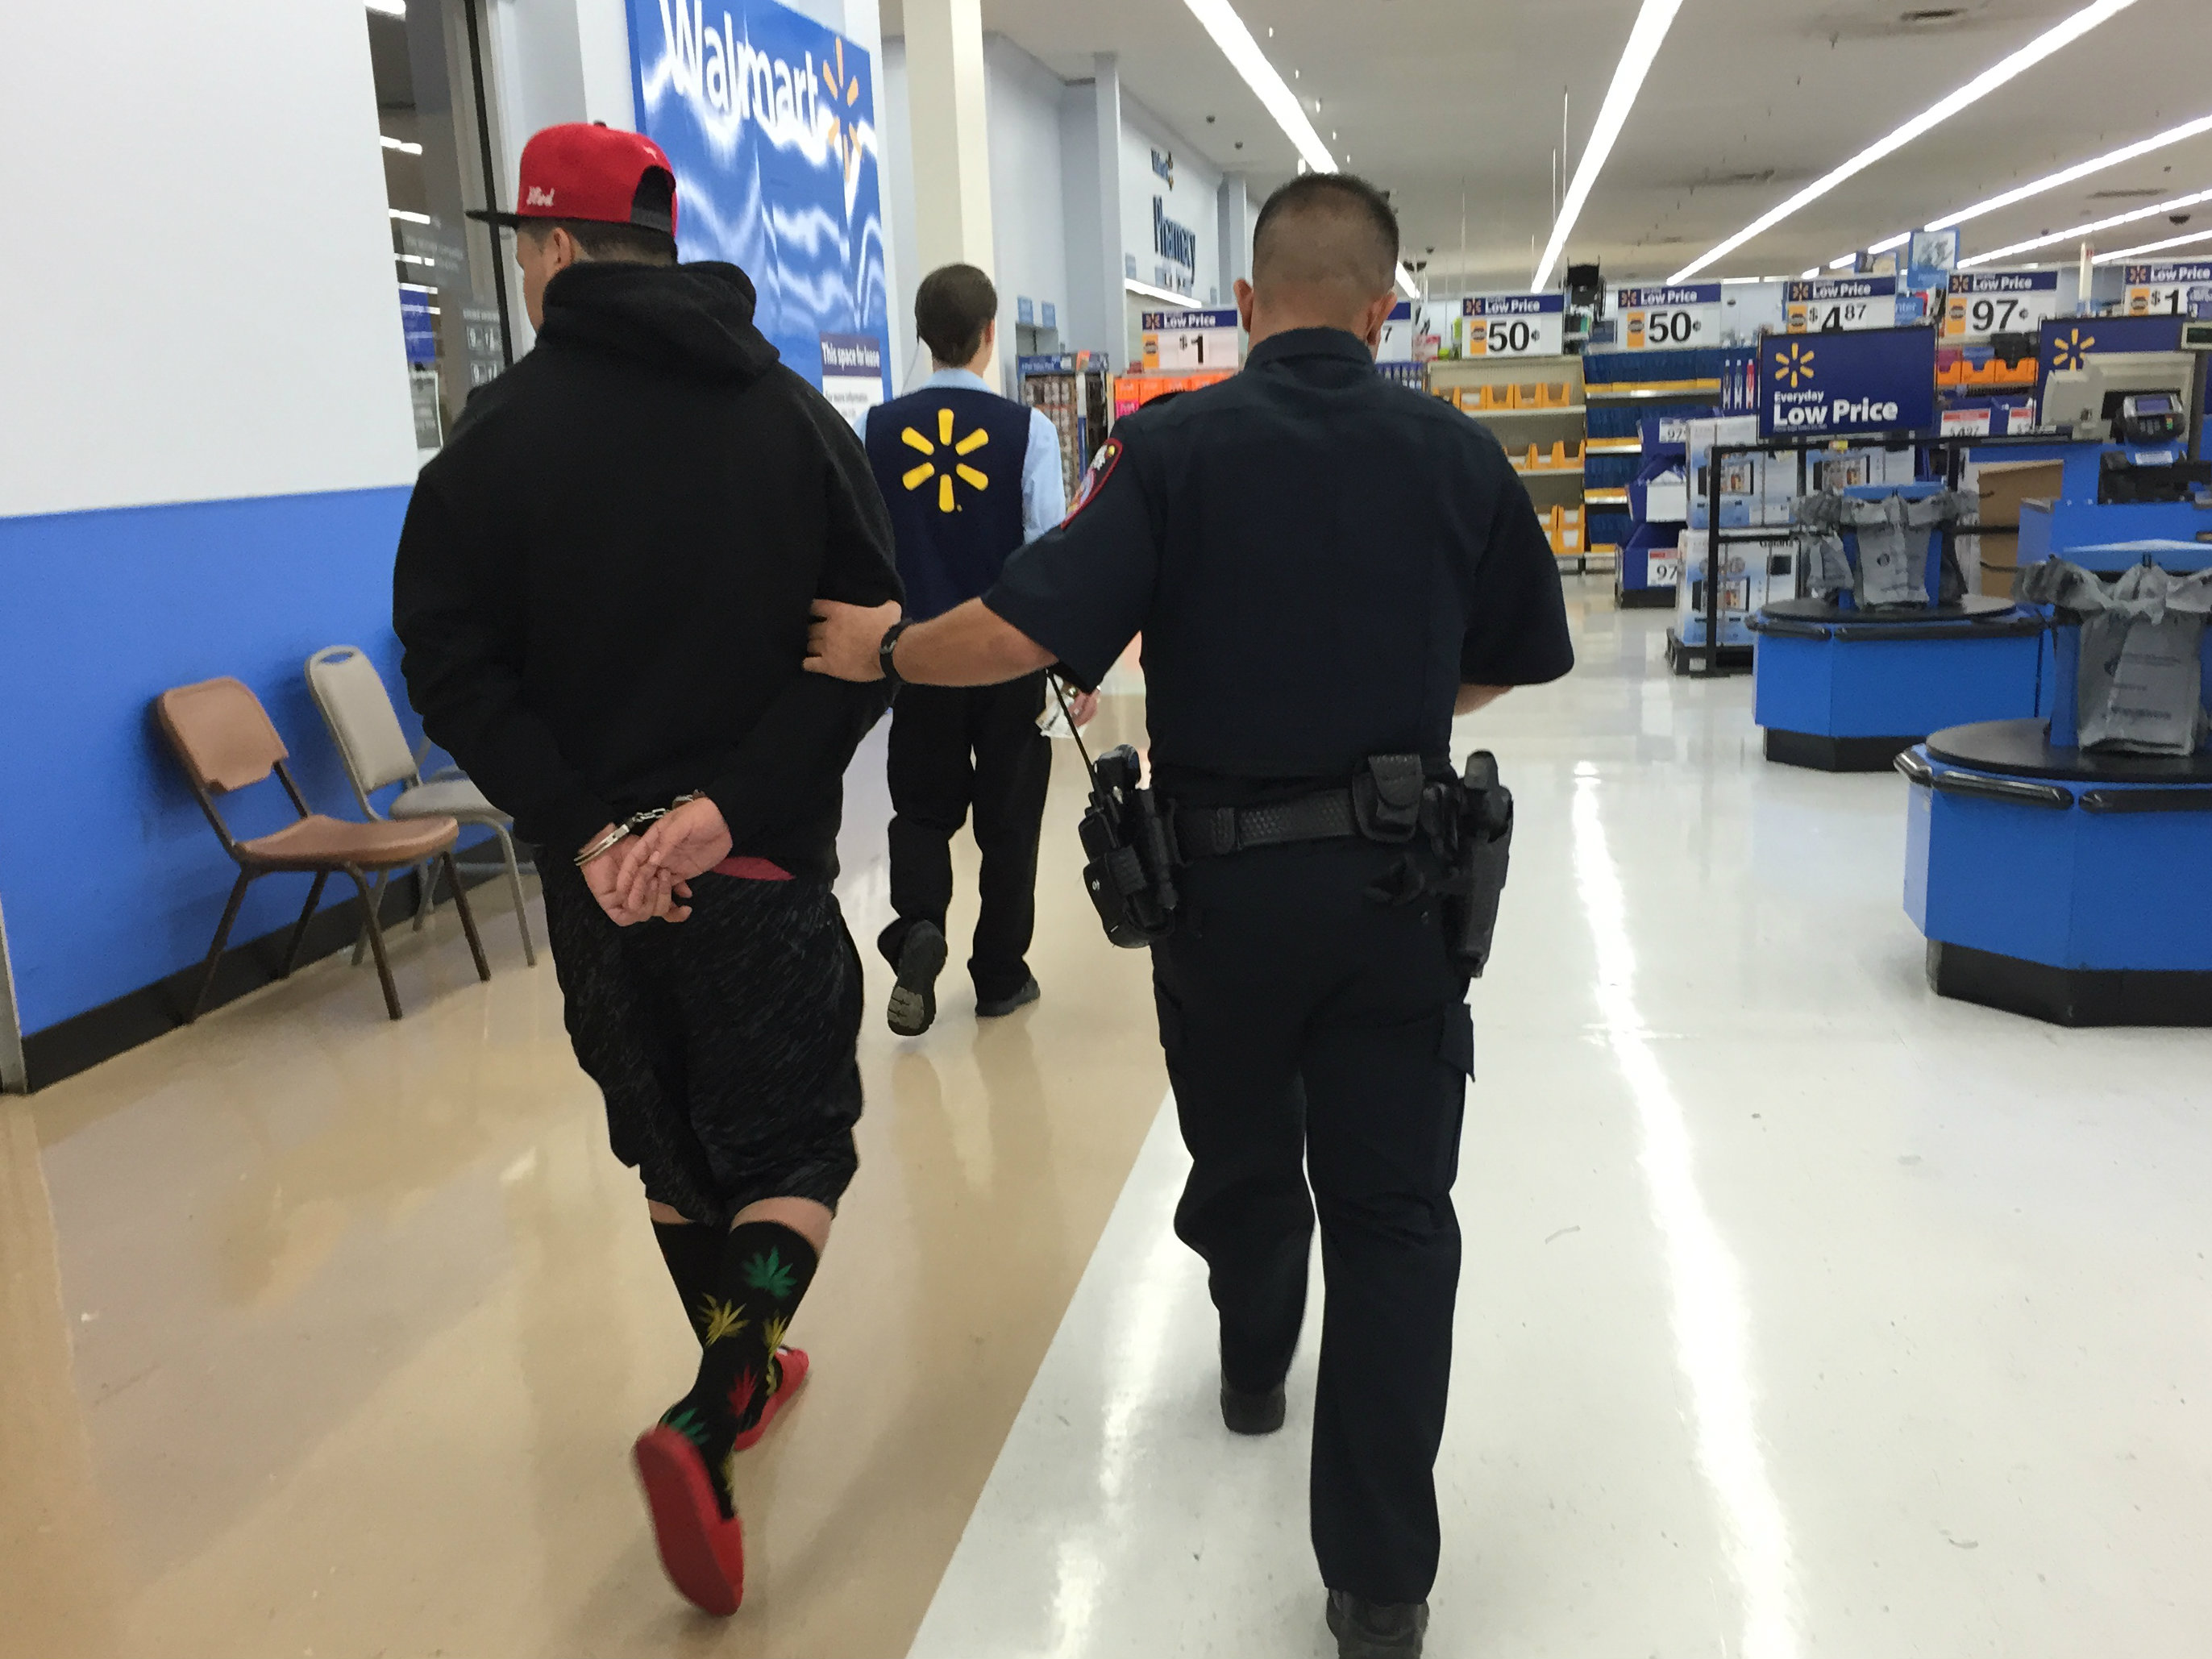 Photo: Body cameras in Pueblo Castro escorting Walmart suspect